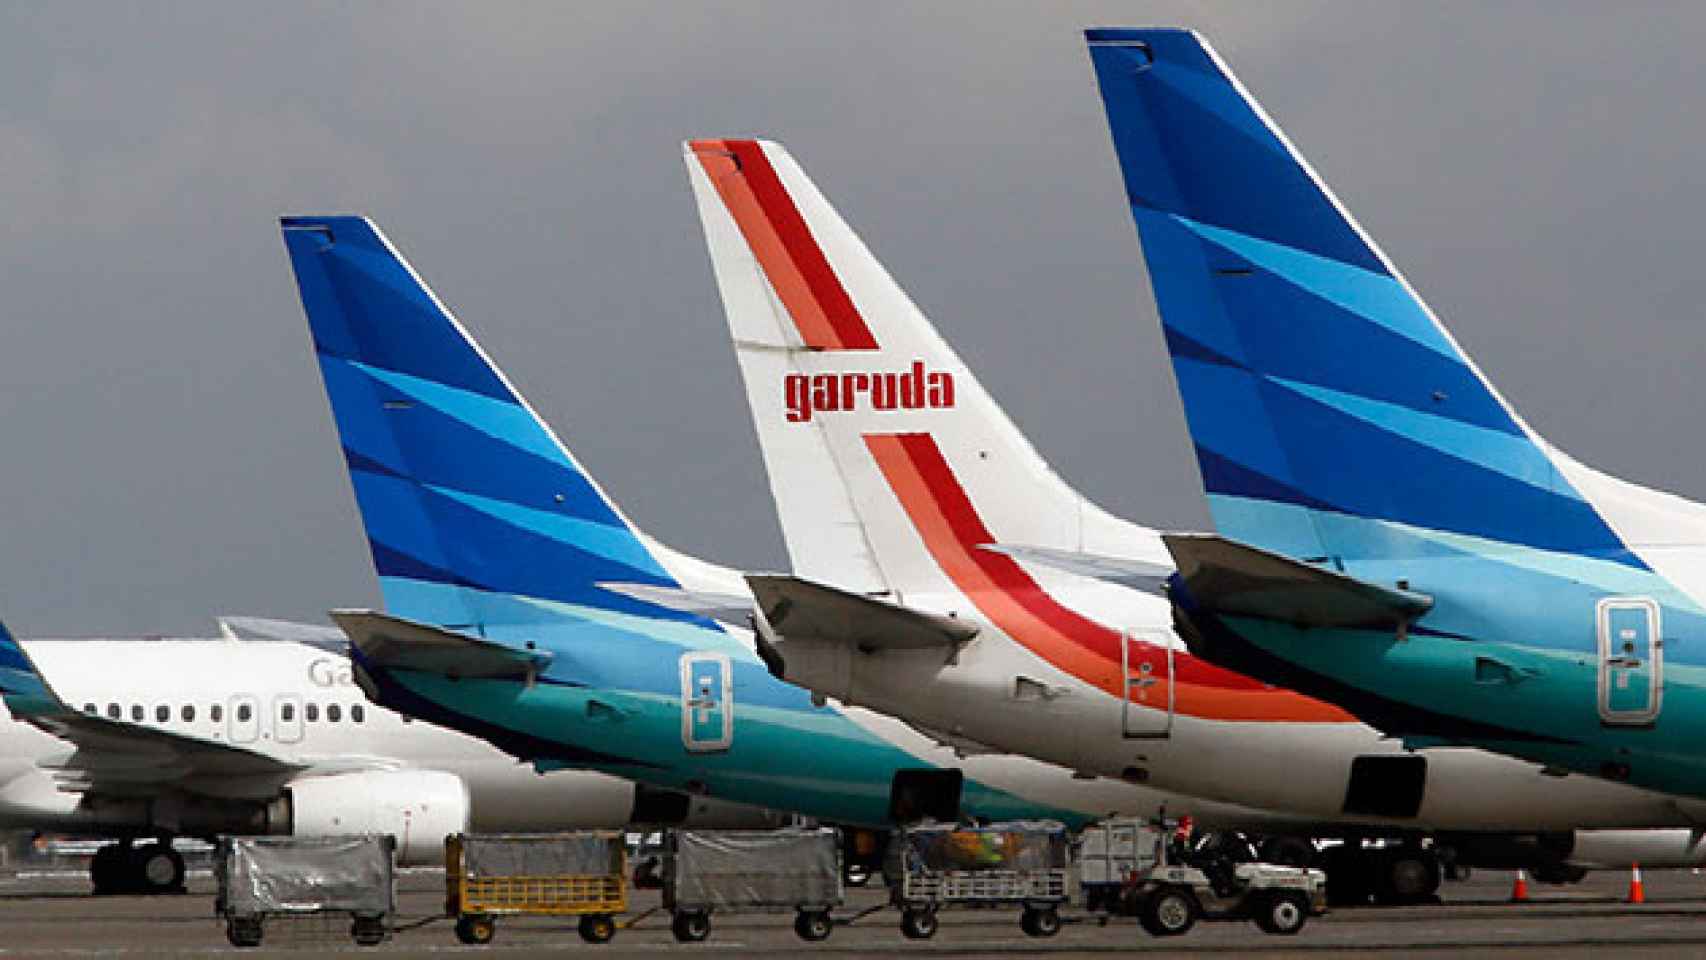 Cuatro aviones de compañías indonesias repostan en un aeropuerto. / EFE